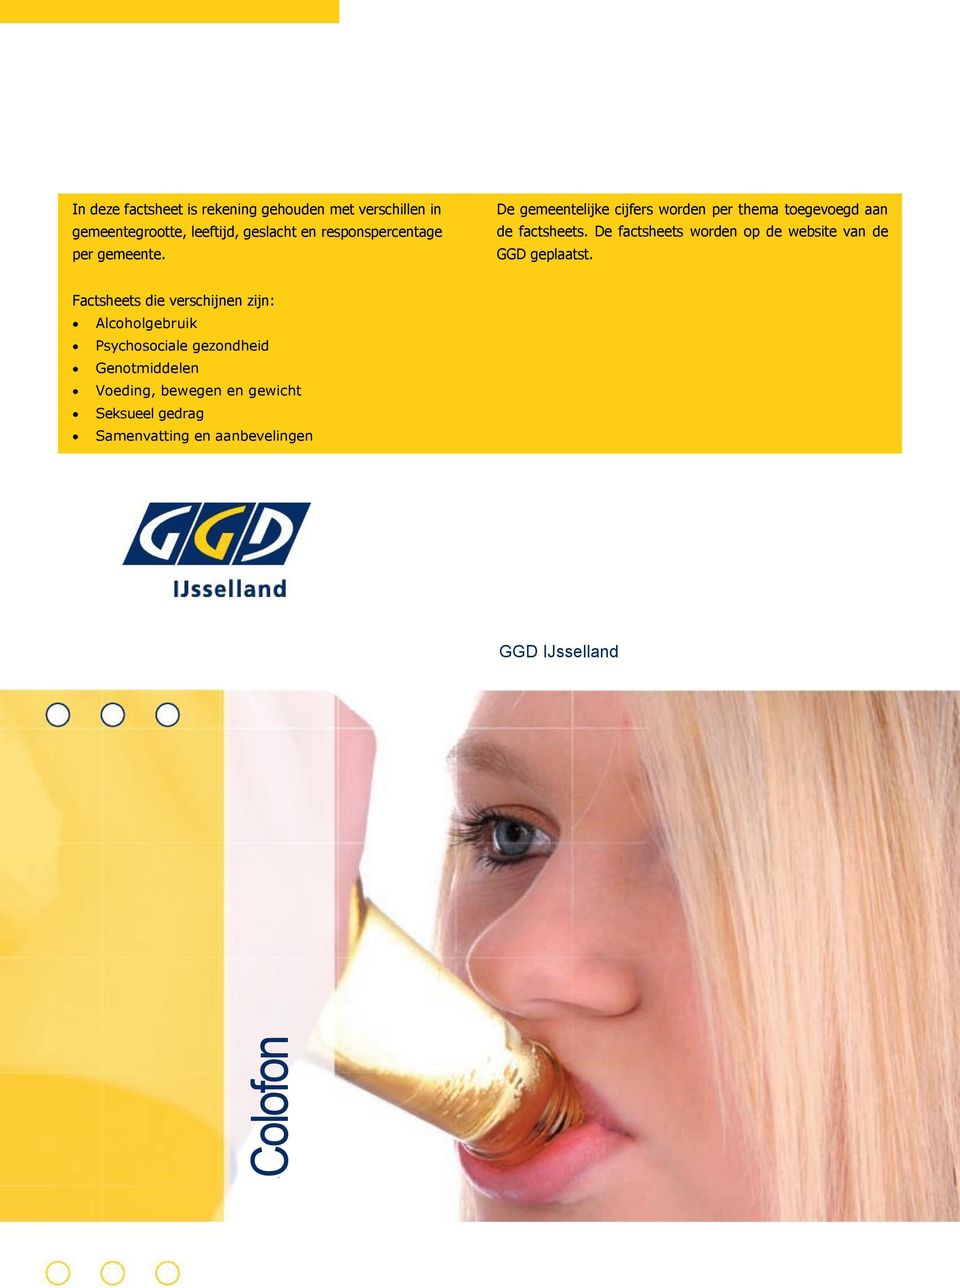 De factsheets worden op de website van de GGD geplaatst.